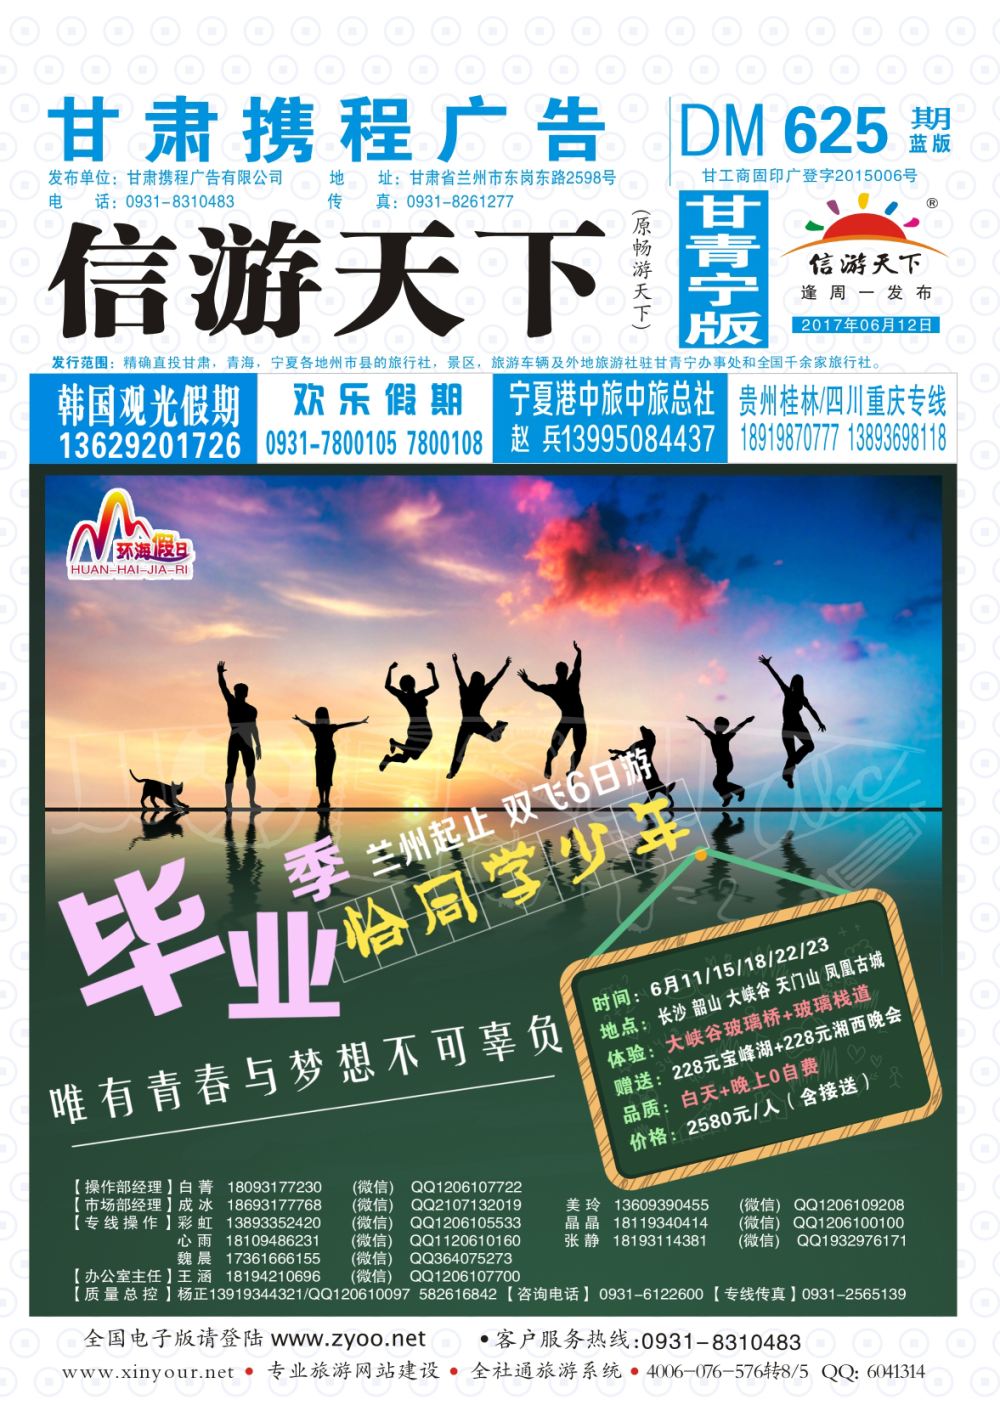 625期       甘肃龙源国际旅行社-环海假日  封面